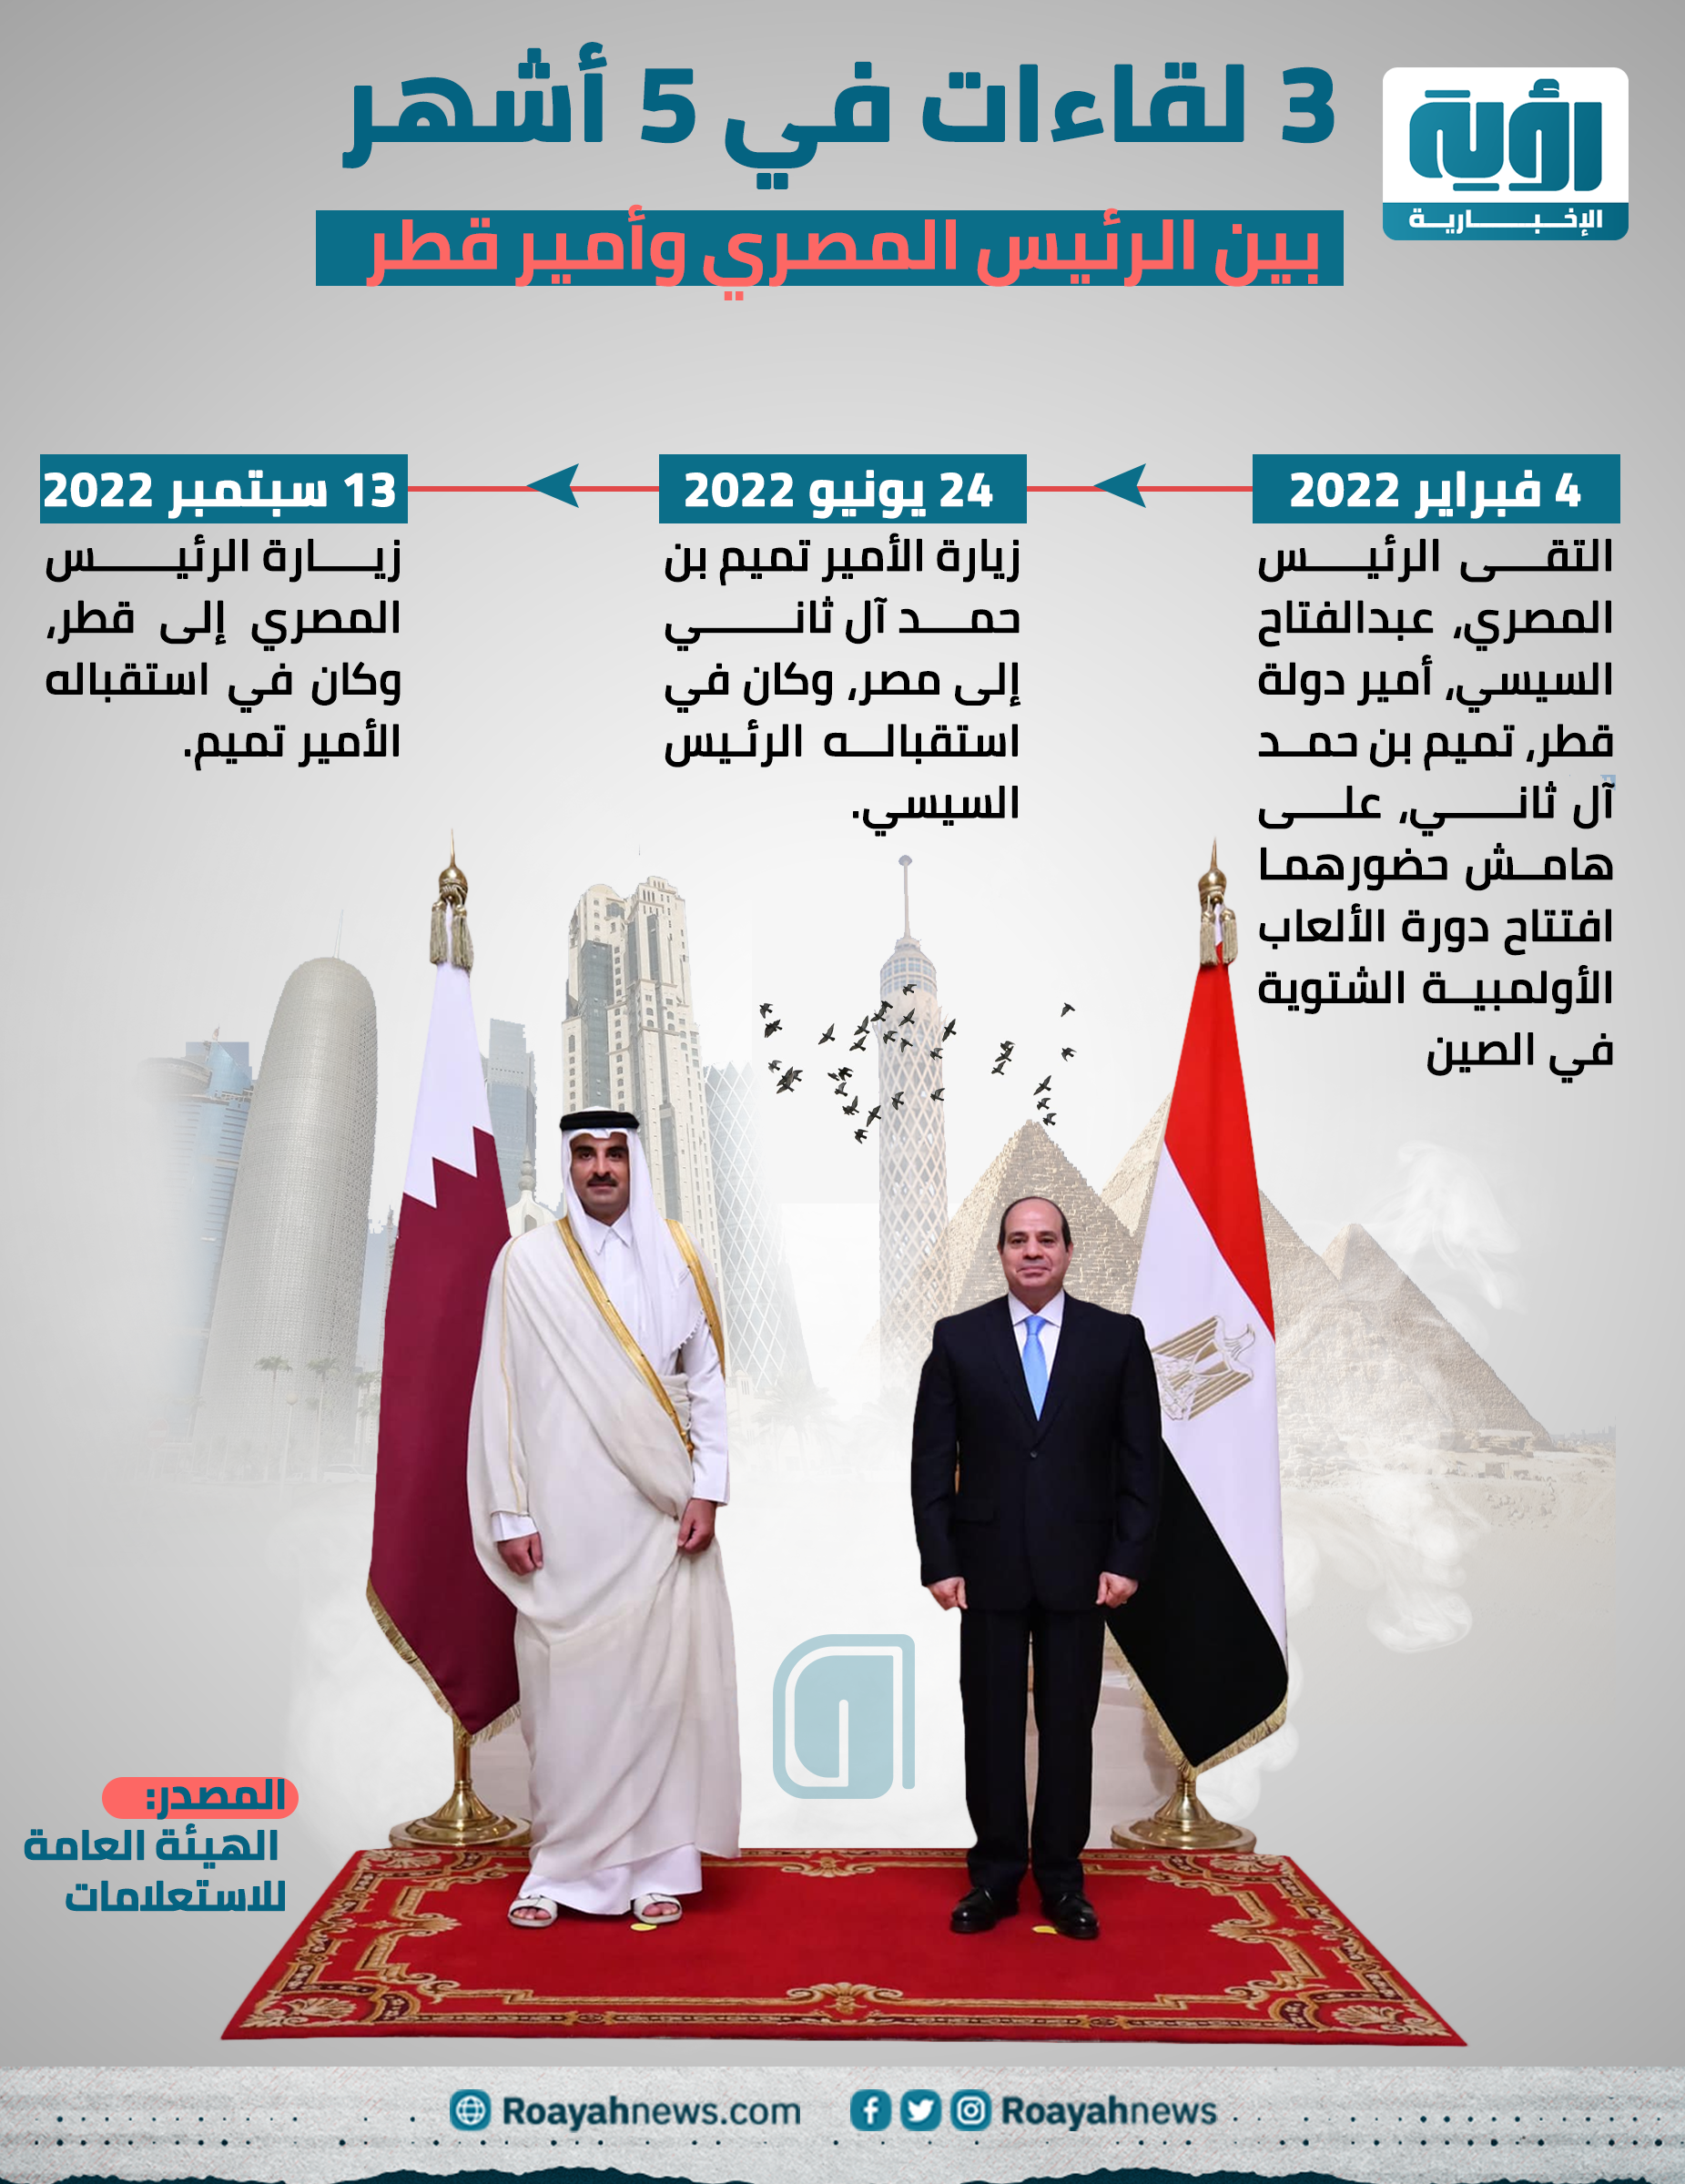 3 لقاءات في 5 أشهر بين الرئيس المصري وأمير قطر